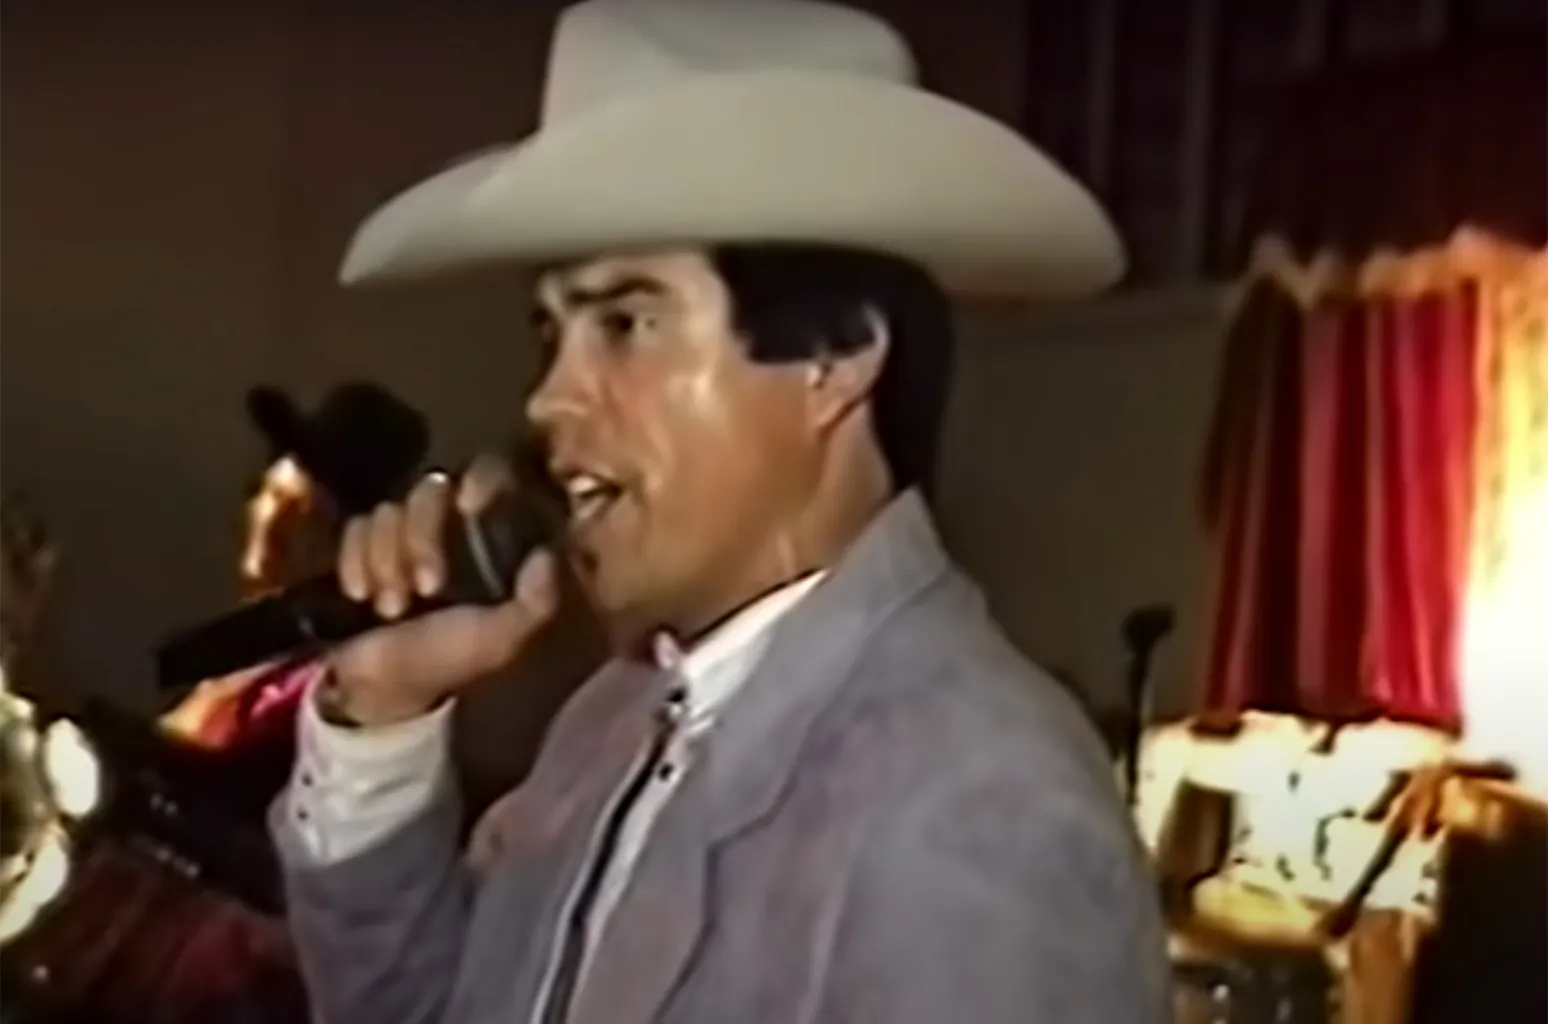 Βίντεο: Όταν ο διάσημος Μεξικανός τραγουδιστής Chalino Sánchez έλαβε το σημείωμα «θανάτου» σε συναυλία